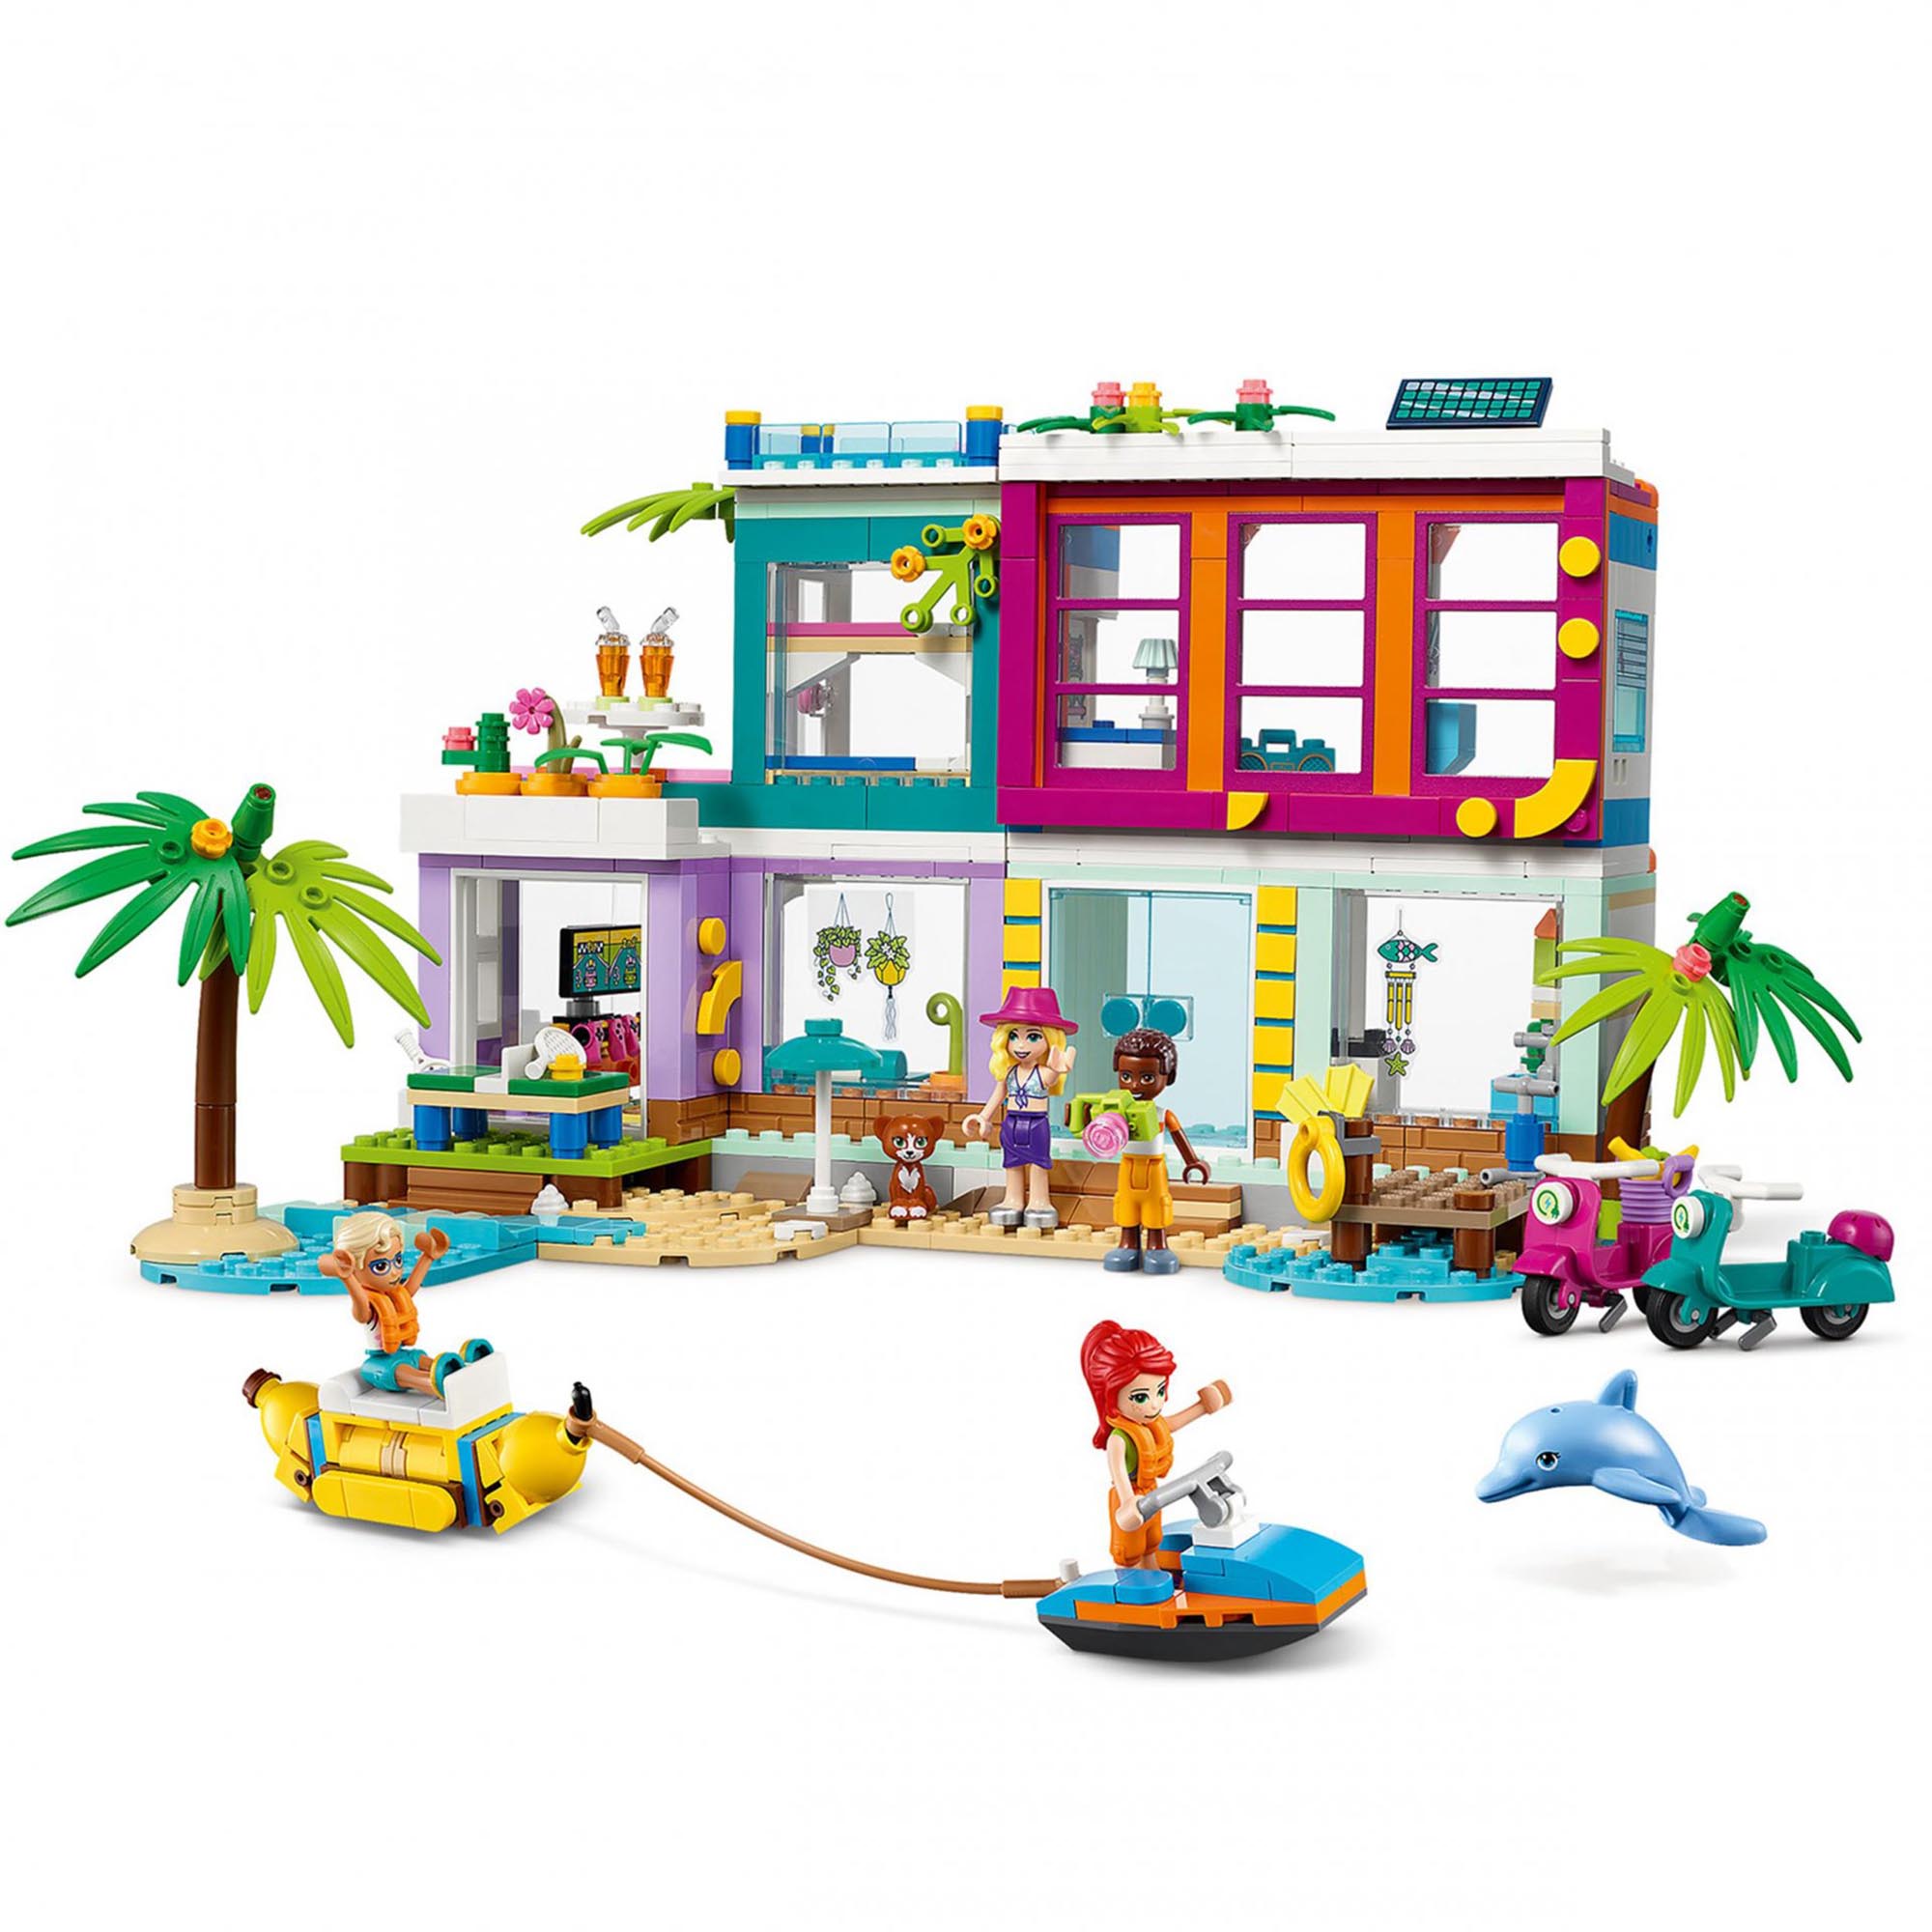 LEGO Friends Casa delle Vacanze sulla Spiaggia, con Piscina, Mini Bamboline Mia  41709, , large